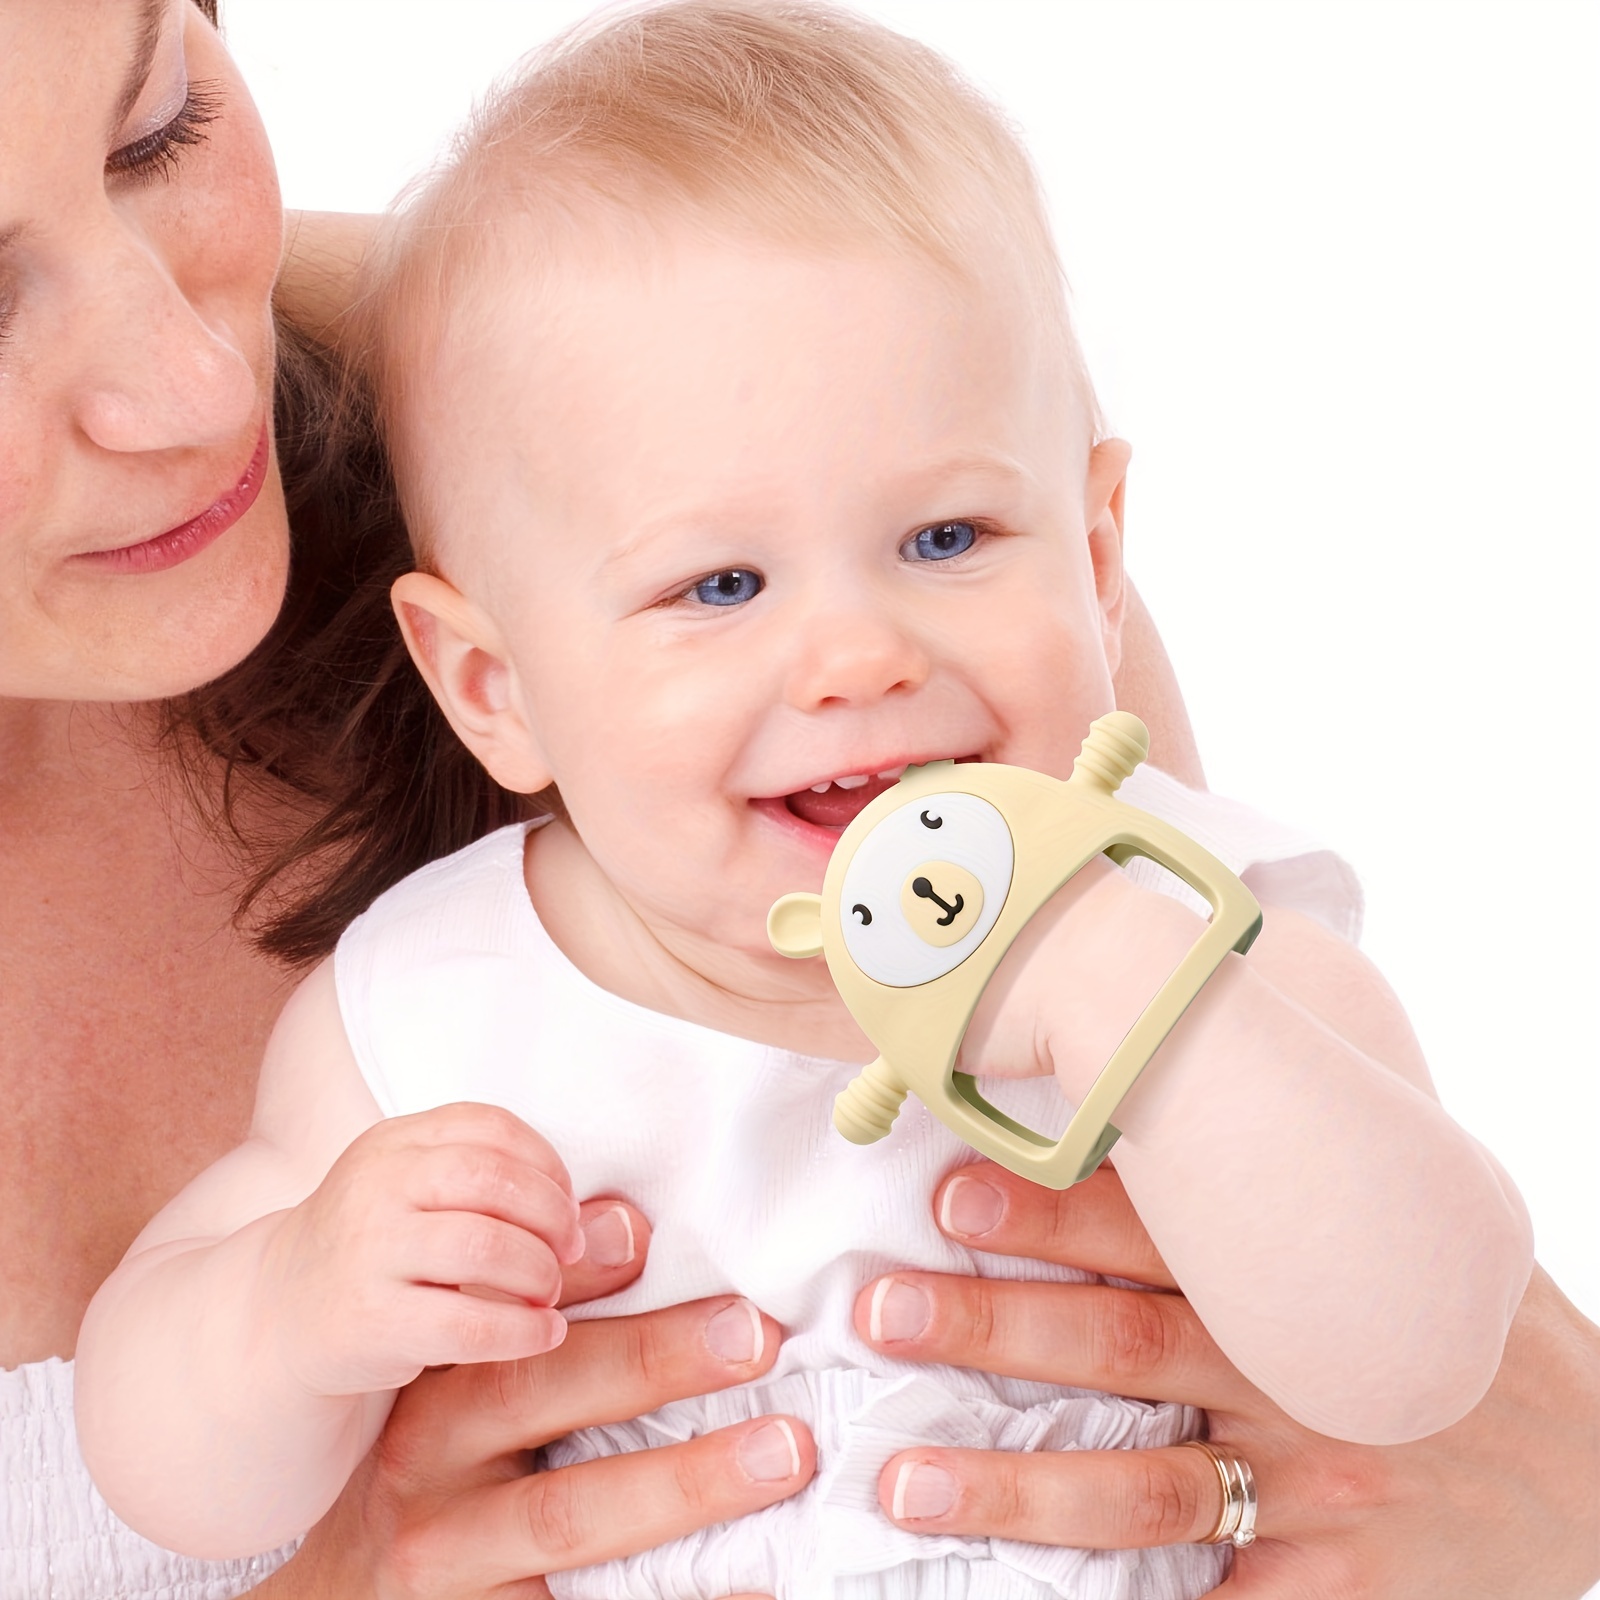  Juguetes de dentición para bebés, mordedores para bebés de 3 a  6 meses, 6 a 12 meses, congelador, sin BPA, de silicona, oso, mordedor,  juguetes molares para masticar, alivio para calmar